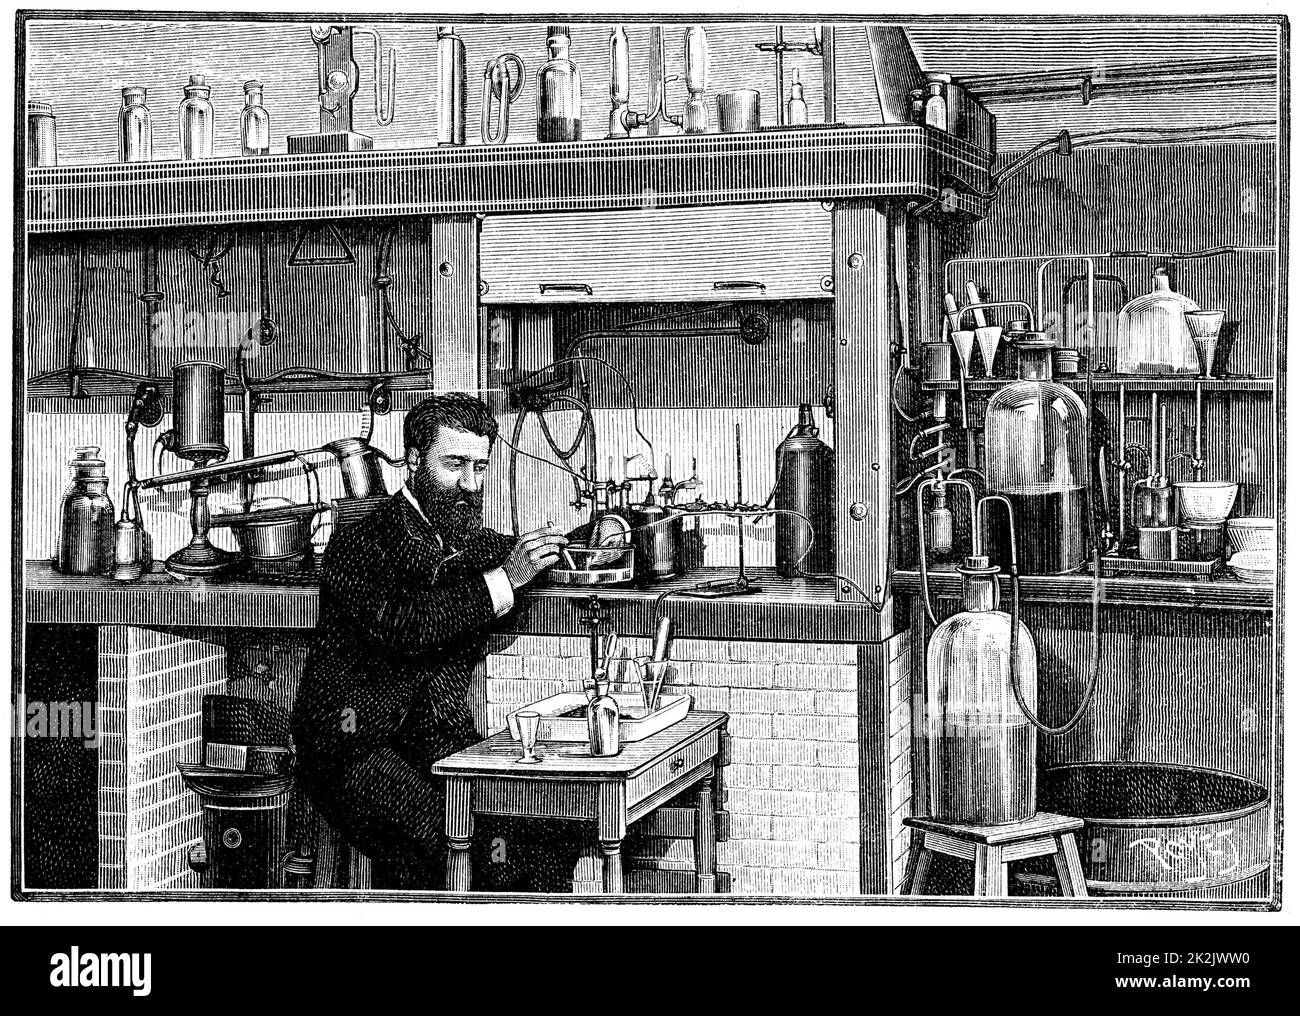 Henri MOISSAN (1852-1907) französischer Chemiker, der in seinem Labor an der Ecole de pharmacie, Paris, an Fluorin arbeitet. 1883 isolierte er Fluorin. Später in seiner Karriere arbeitete er an der Herstellung von künstlichen Edelsteinen, insbesondere Diamanten. Von 'La Nature', Paris, 1903 Stockfoto